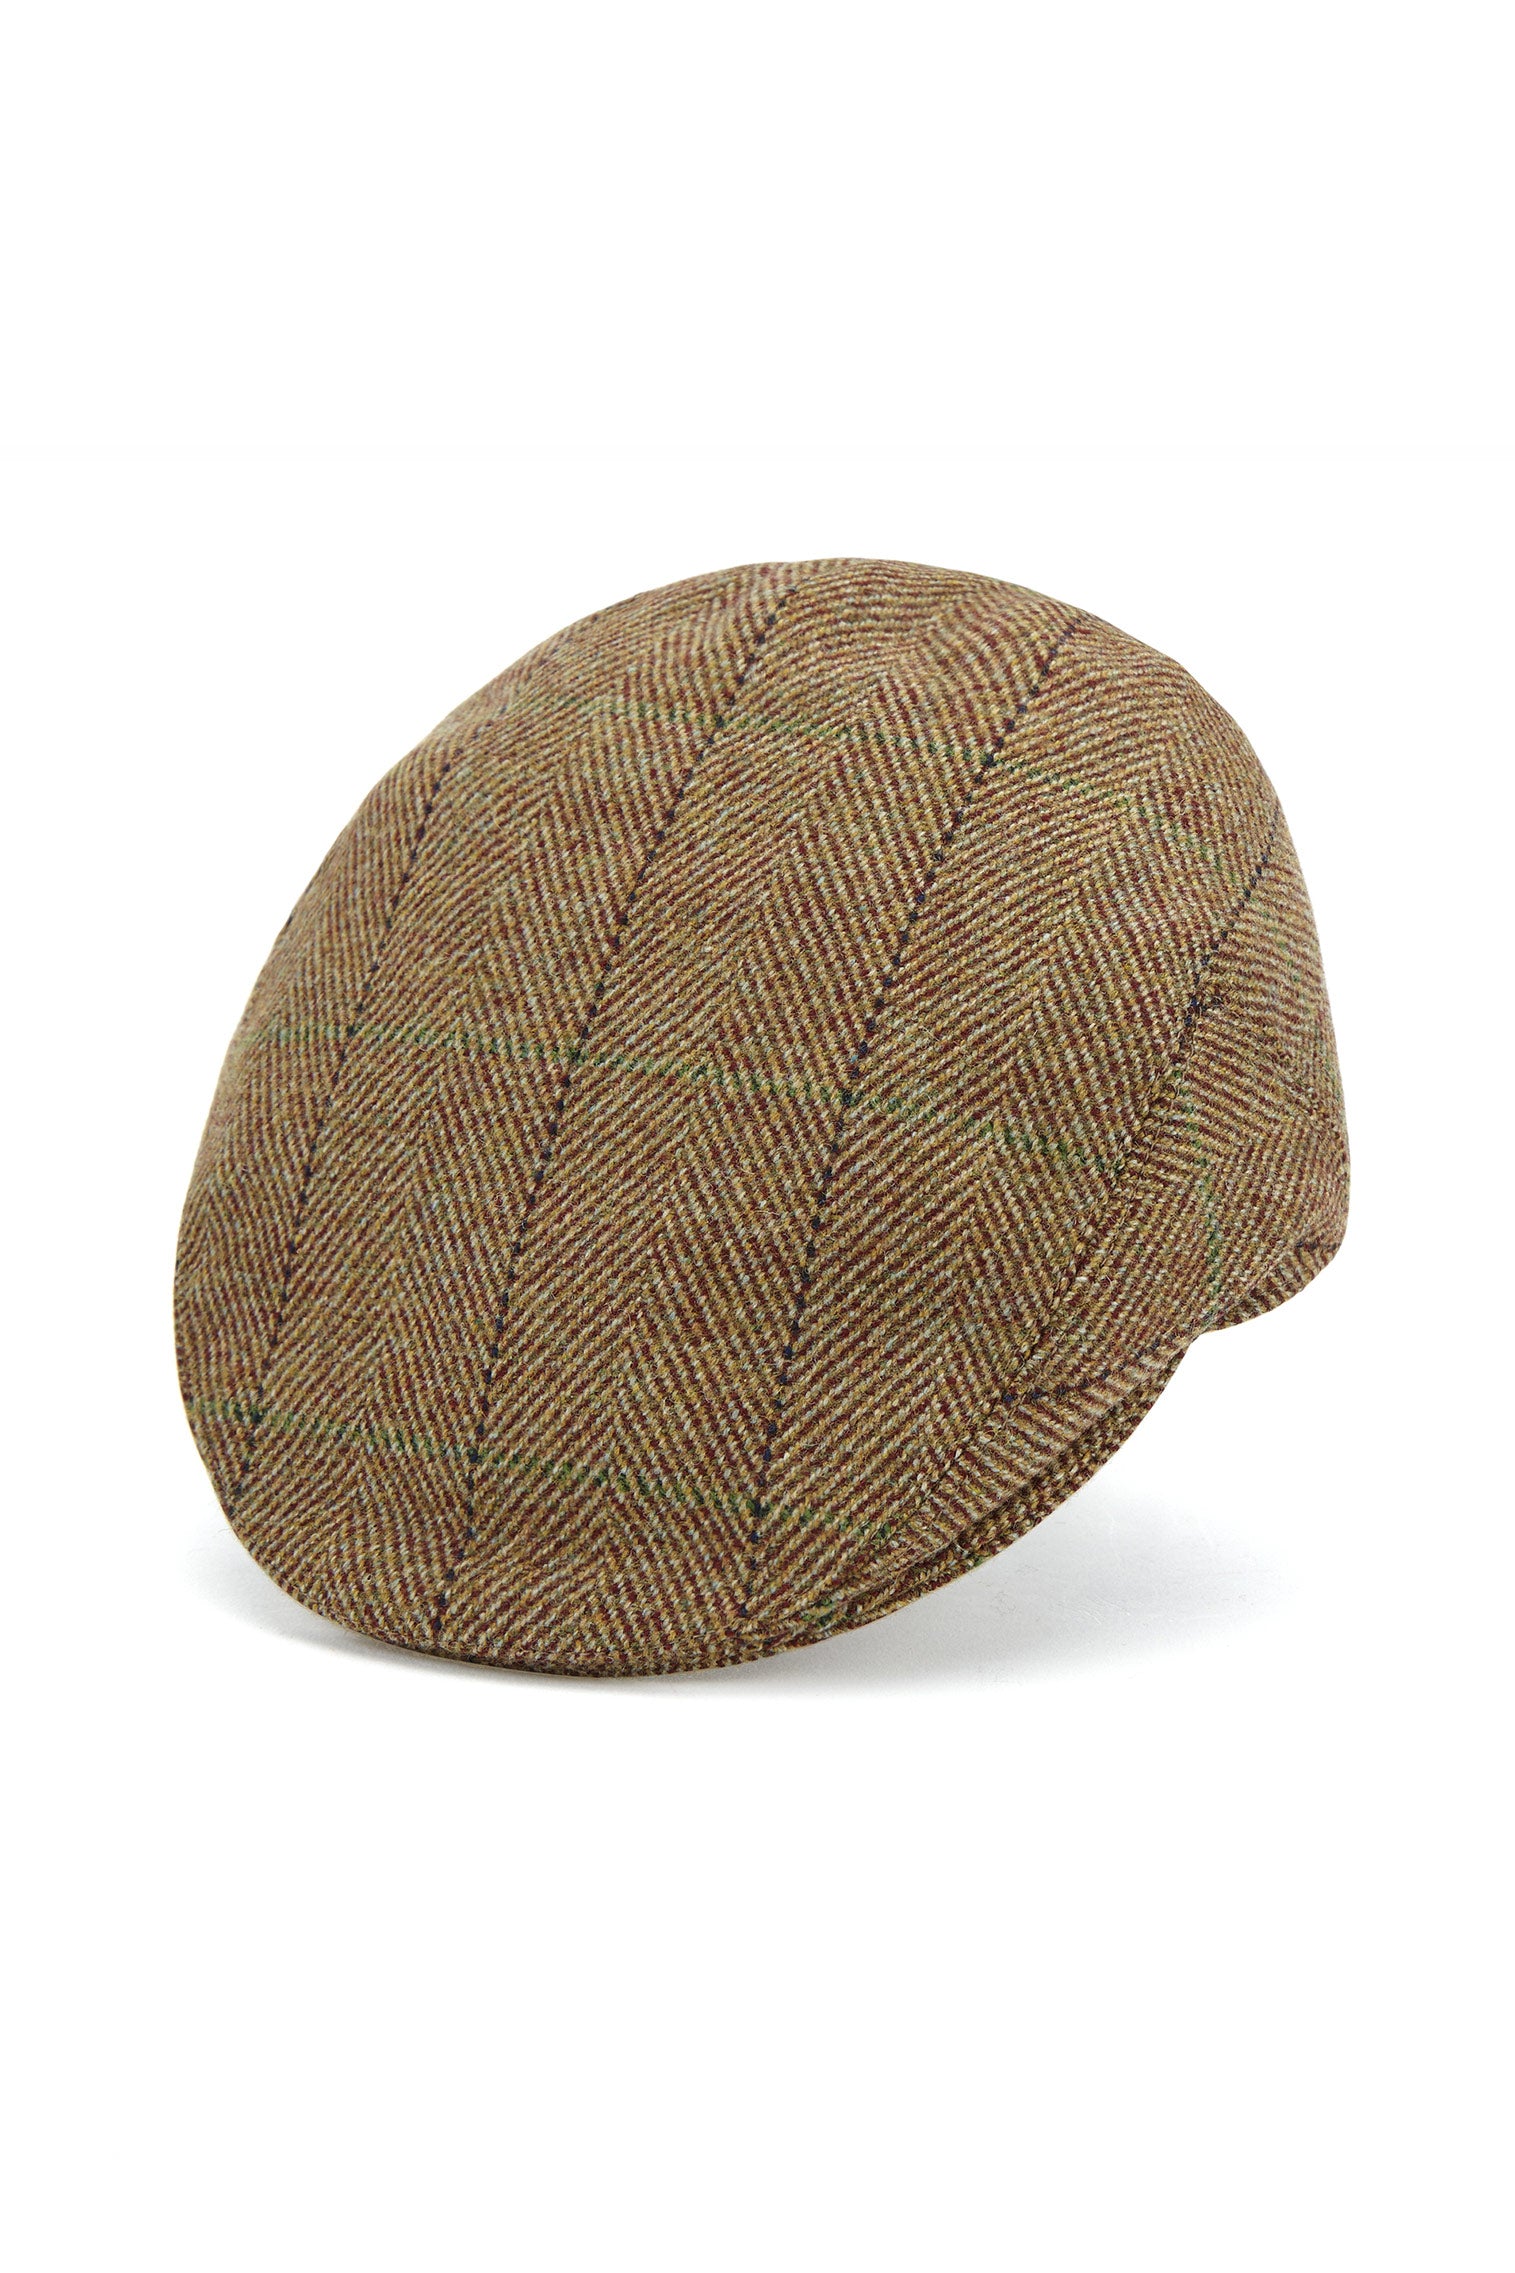 Gill Tweed Flat Cap - Best Selling Hats - Lock & Co. Hatters London UK